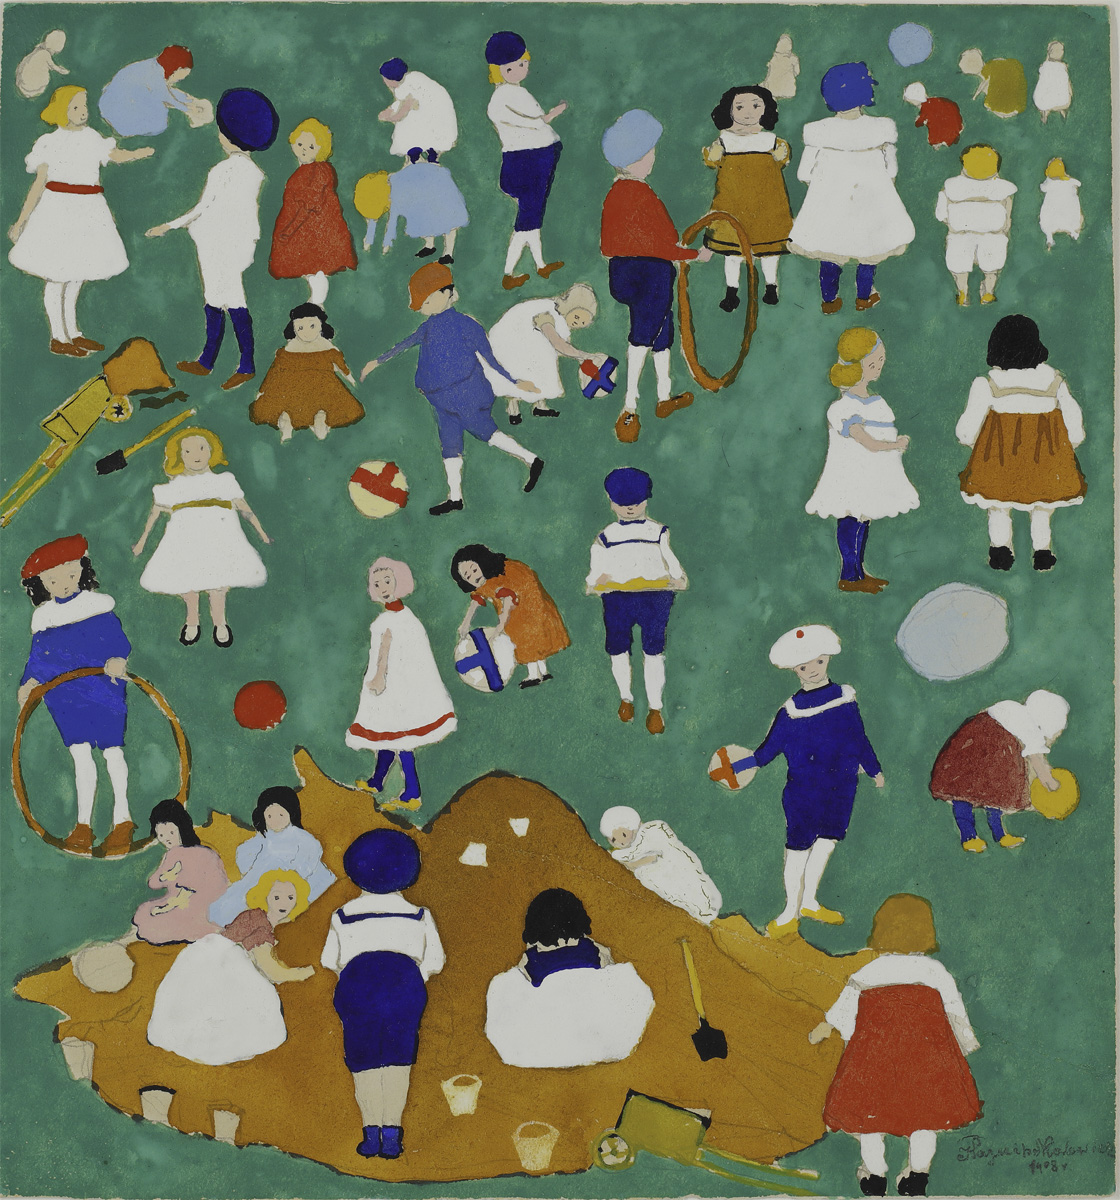 Salt: главное здесь, остальное по вкусу - Казимир Малевич «Дети на лужайке», 1908